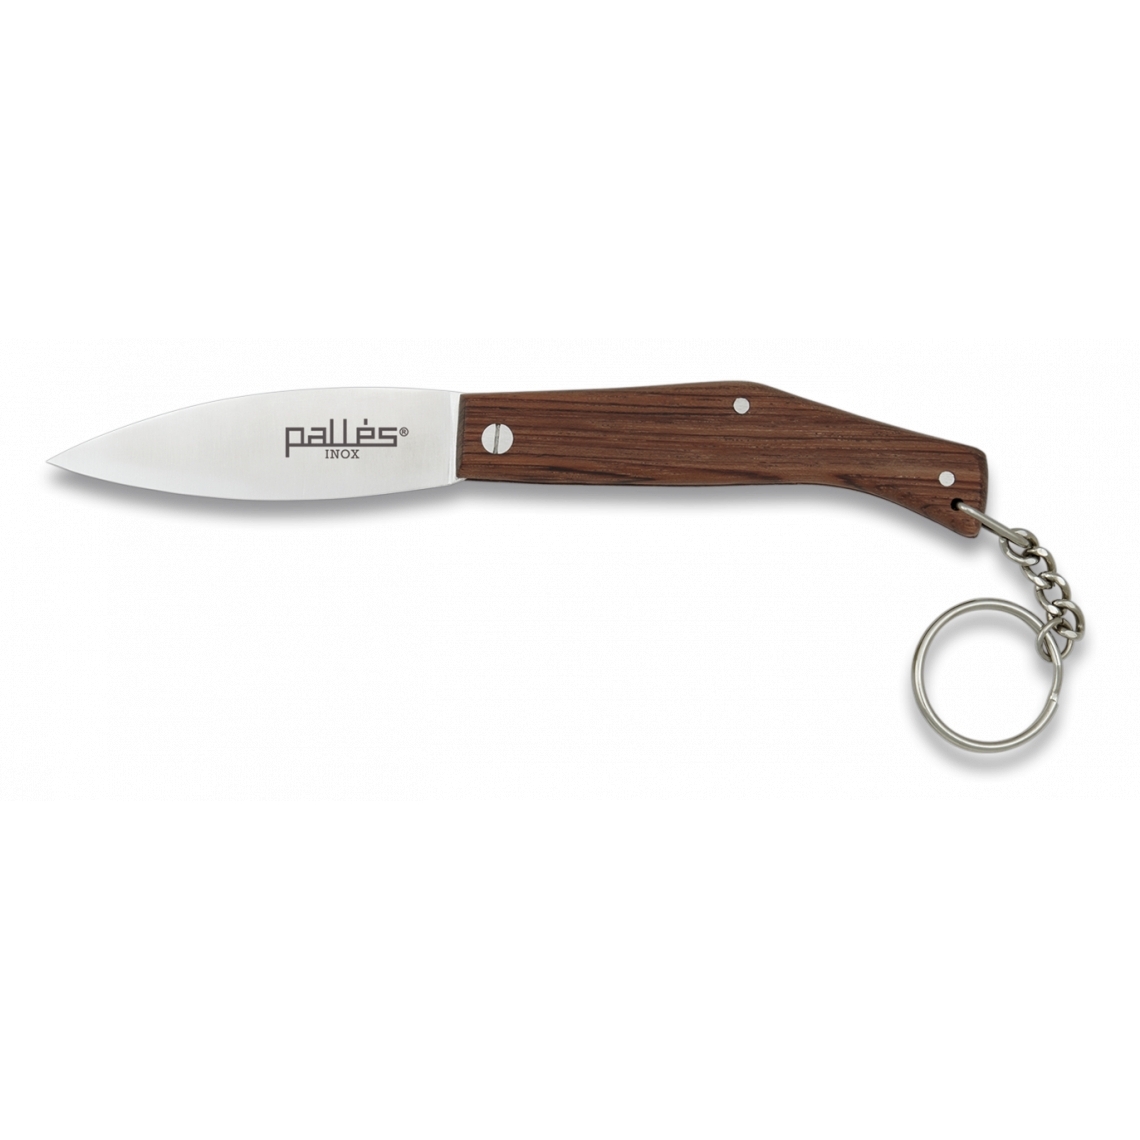 Nůž zavírací Pallés Nº000 Keyring Wood - hnědý-stříbrný (18+)